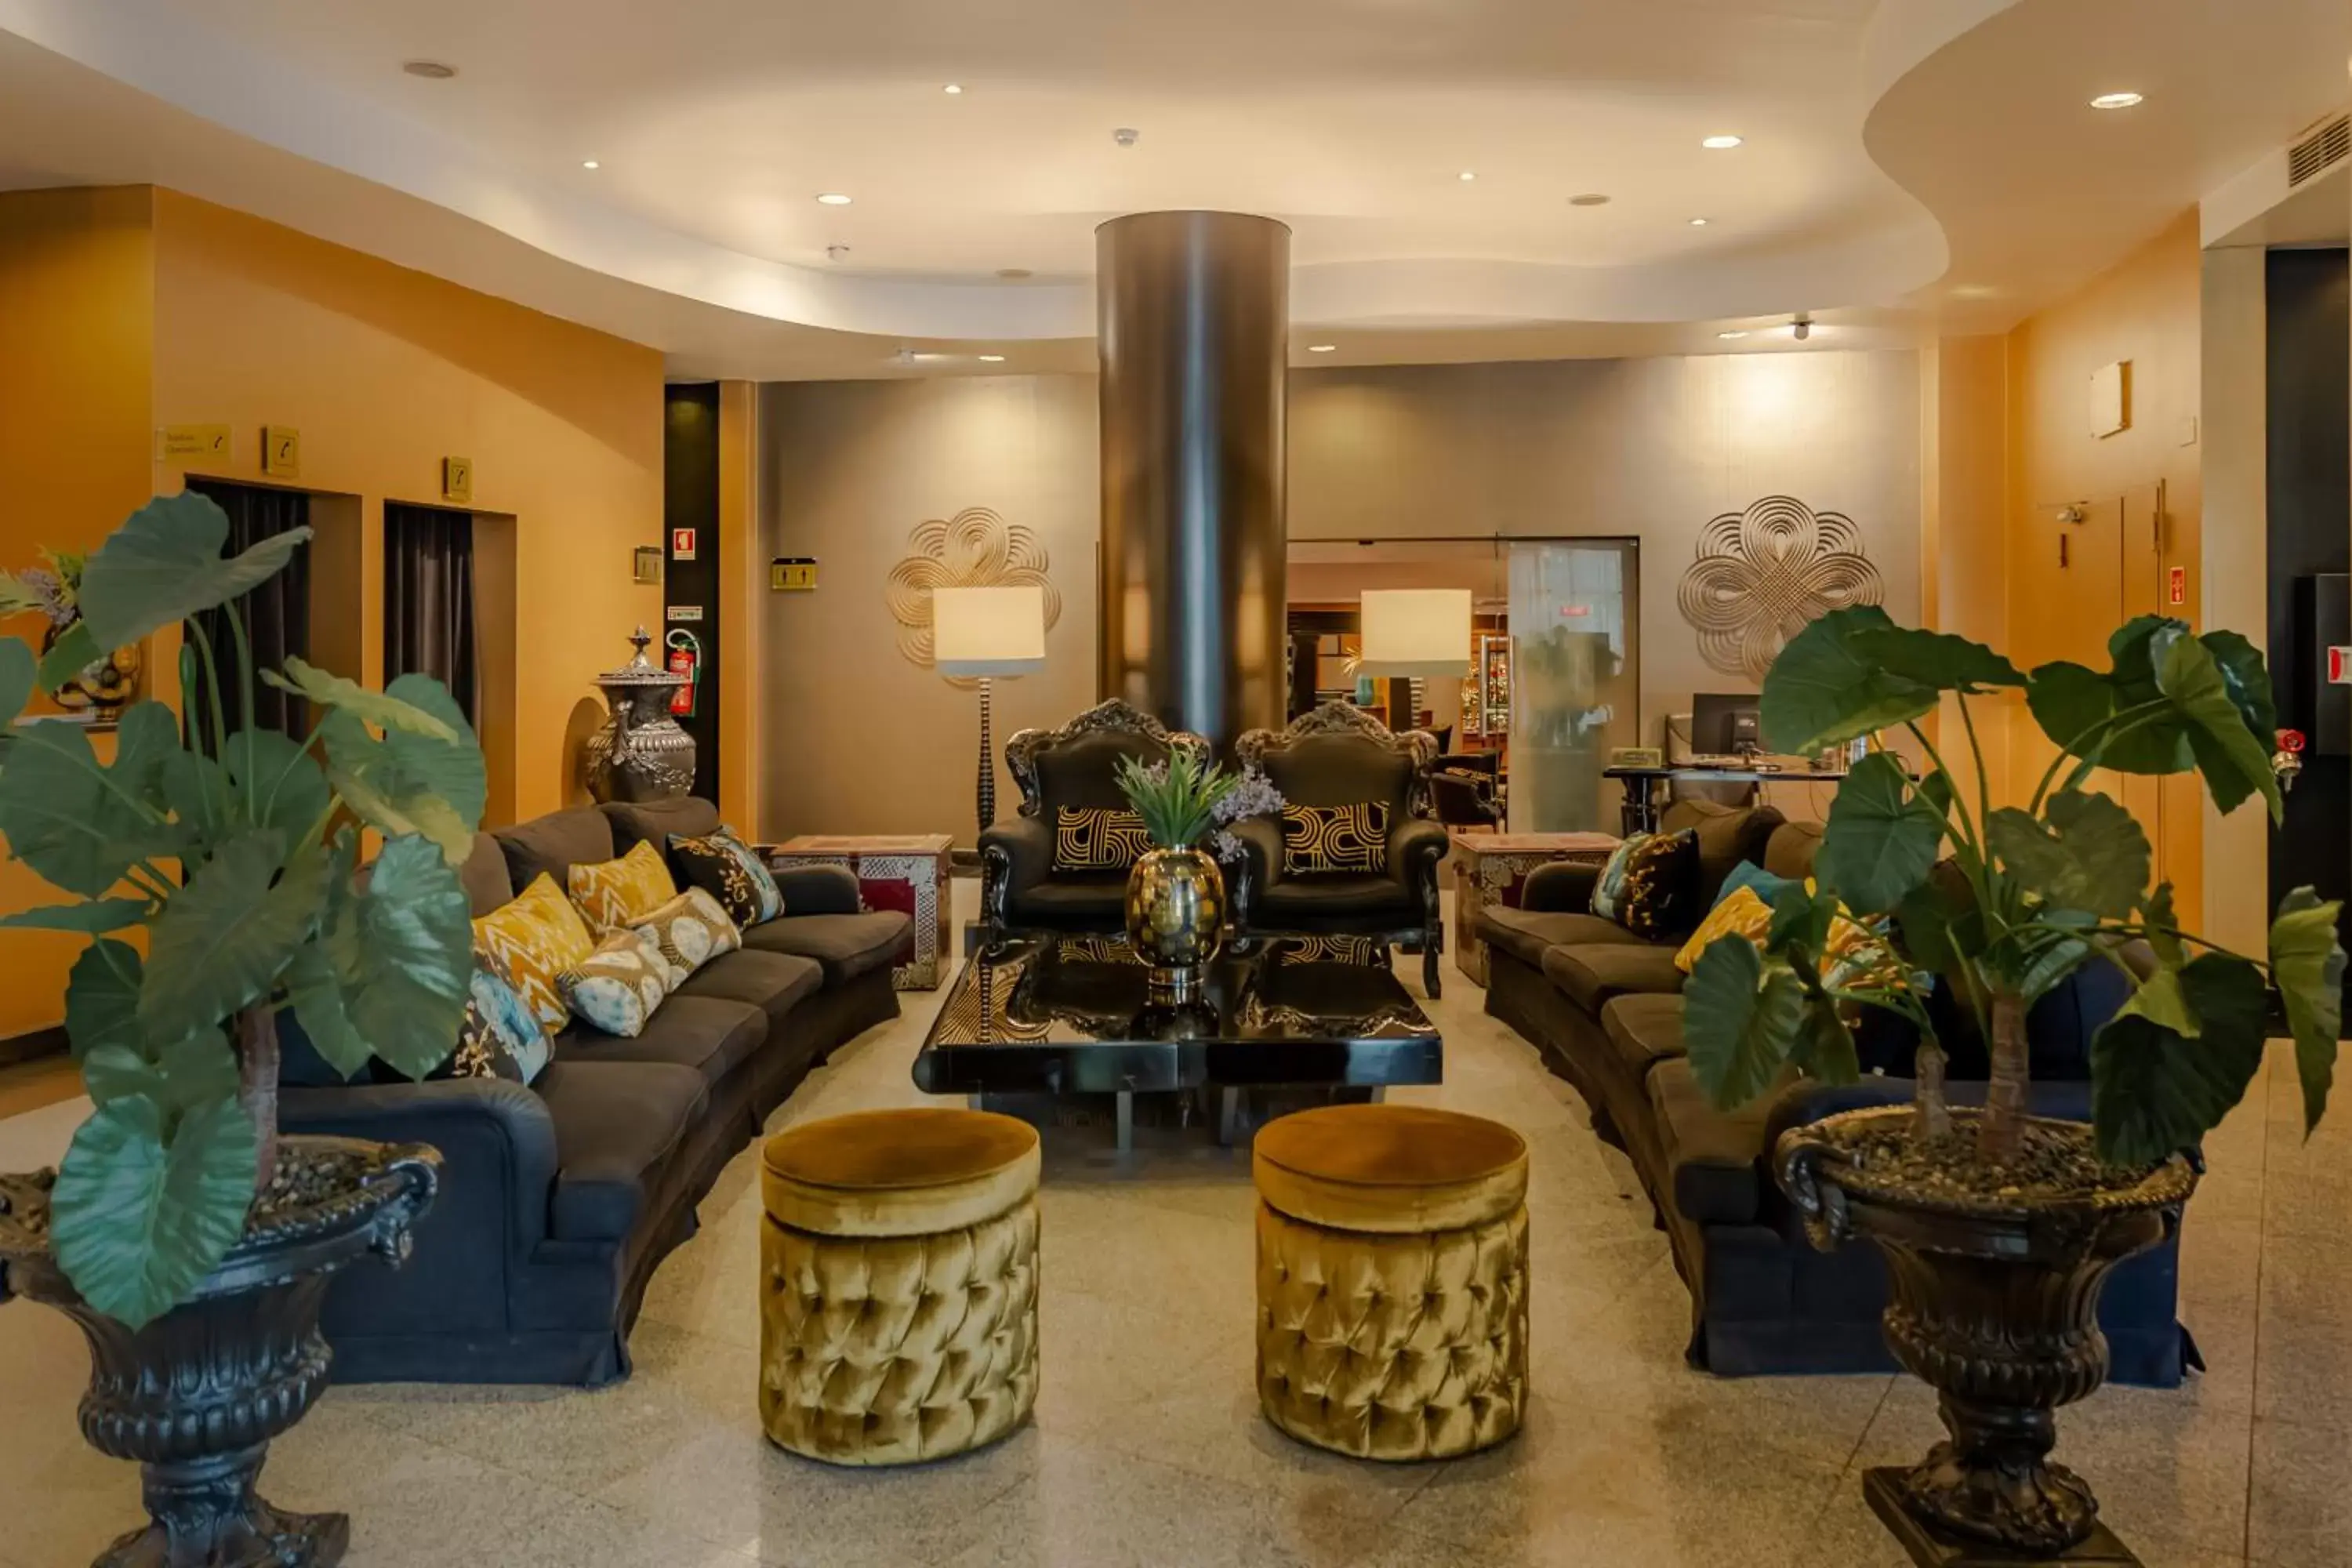 Lobby or reception, Lobby/Reception in Hotel Mundial